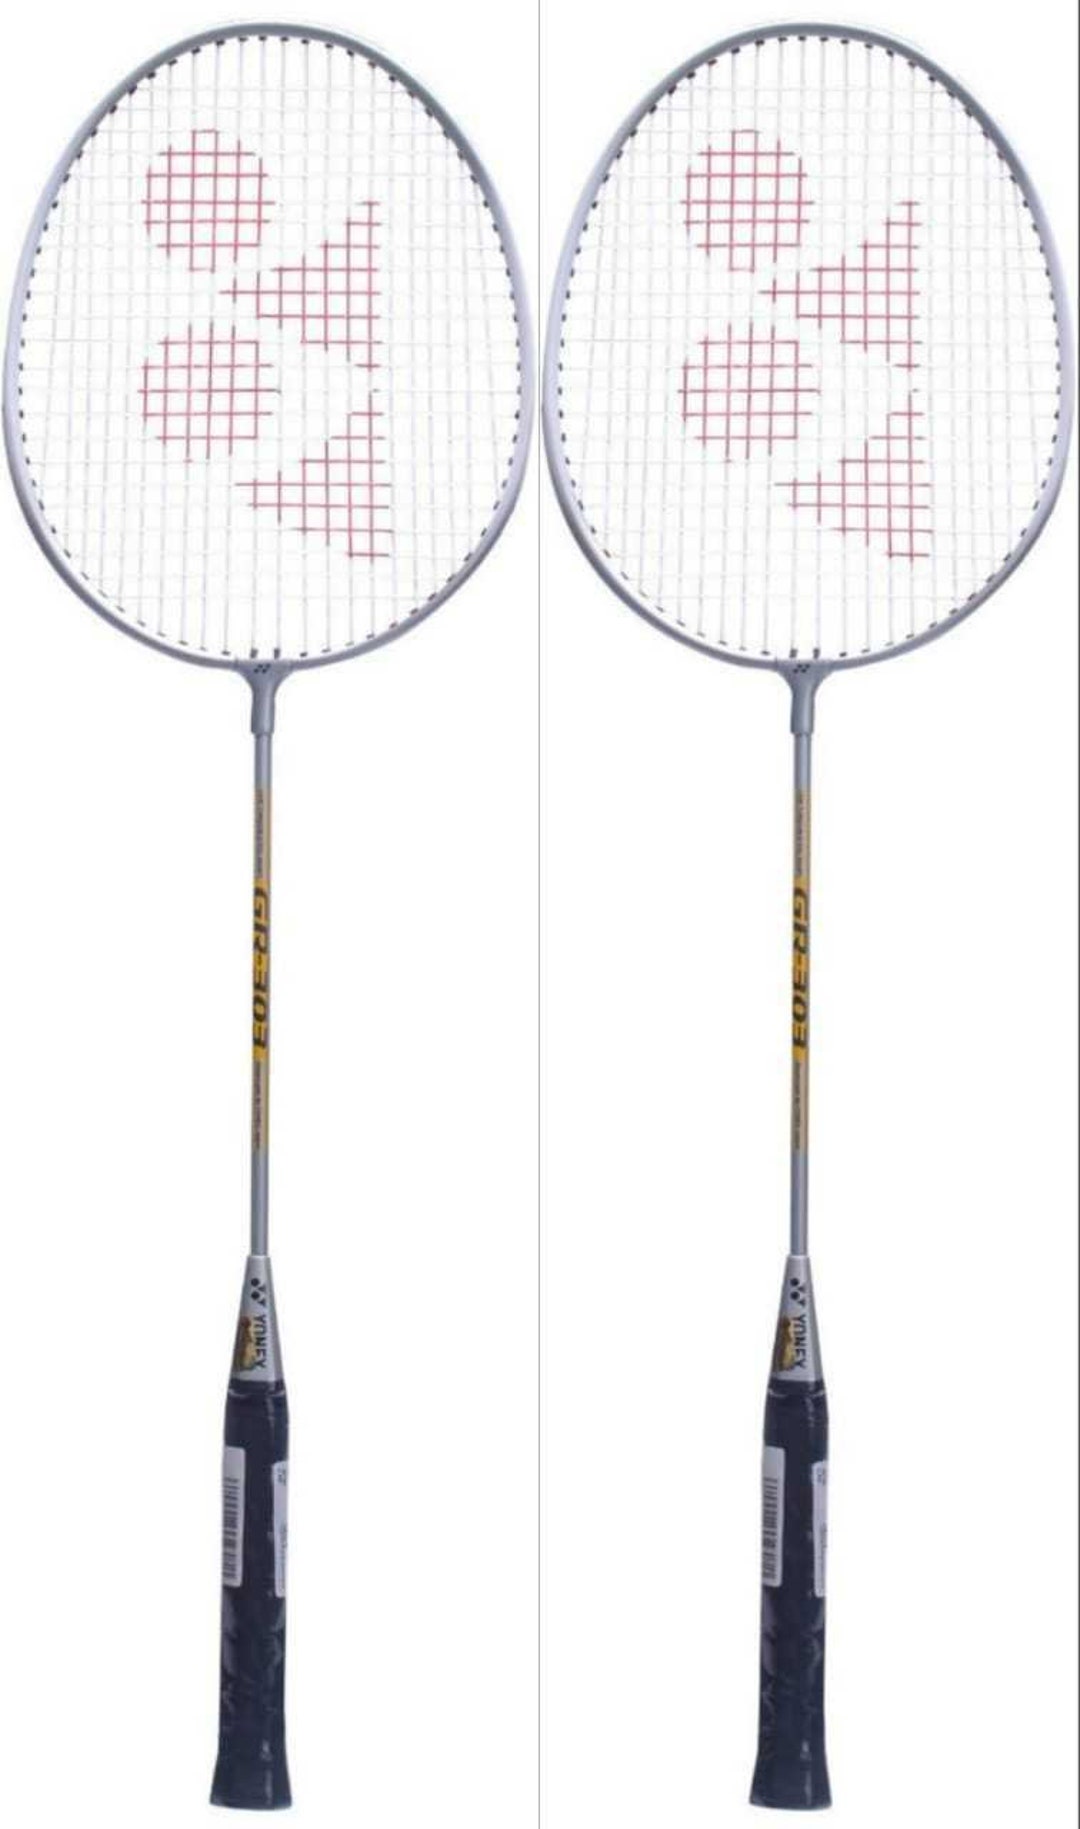 Buy Yonex GR 303 Badminton Racket Combo set of 2 Online in India